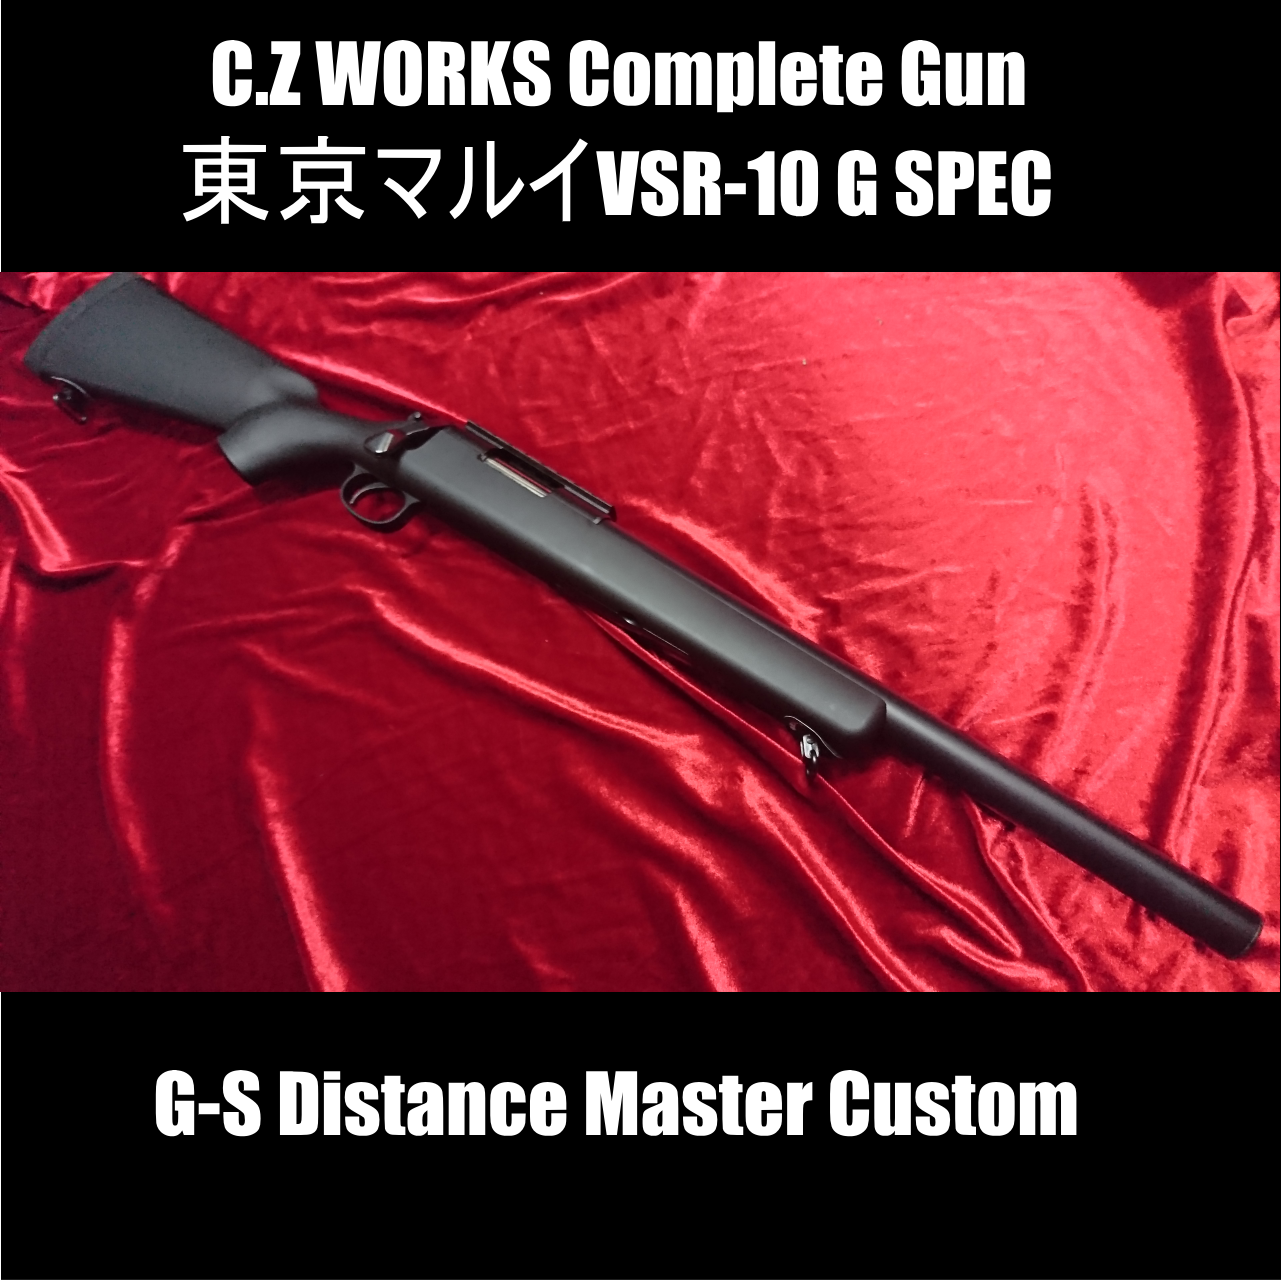 C.Zオリジナルコンプリートガン 東京マルイ VSR-10 G SPEC【Distabce